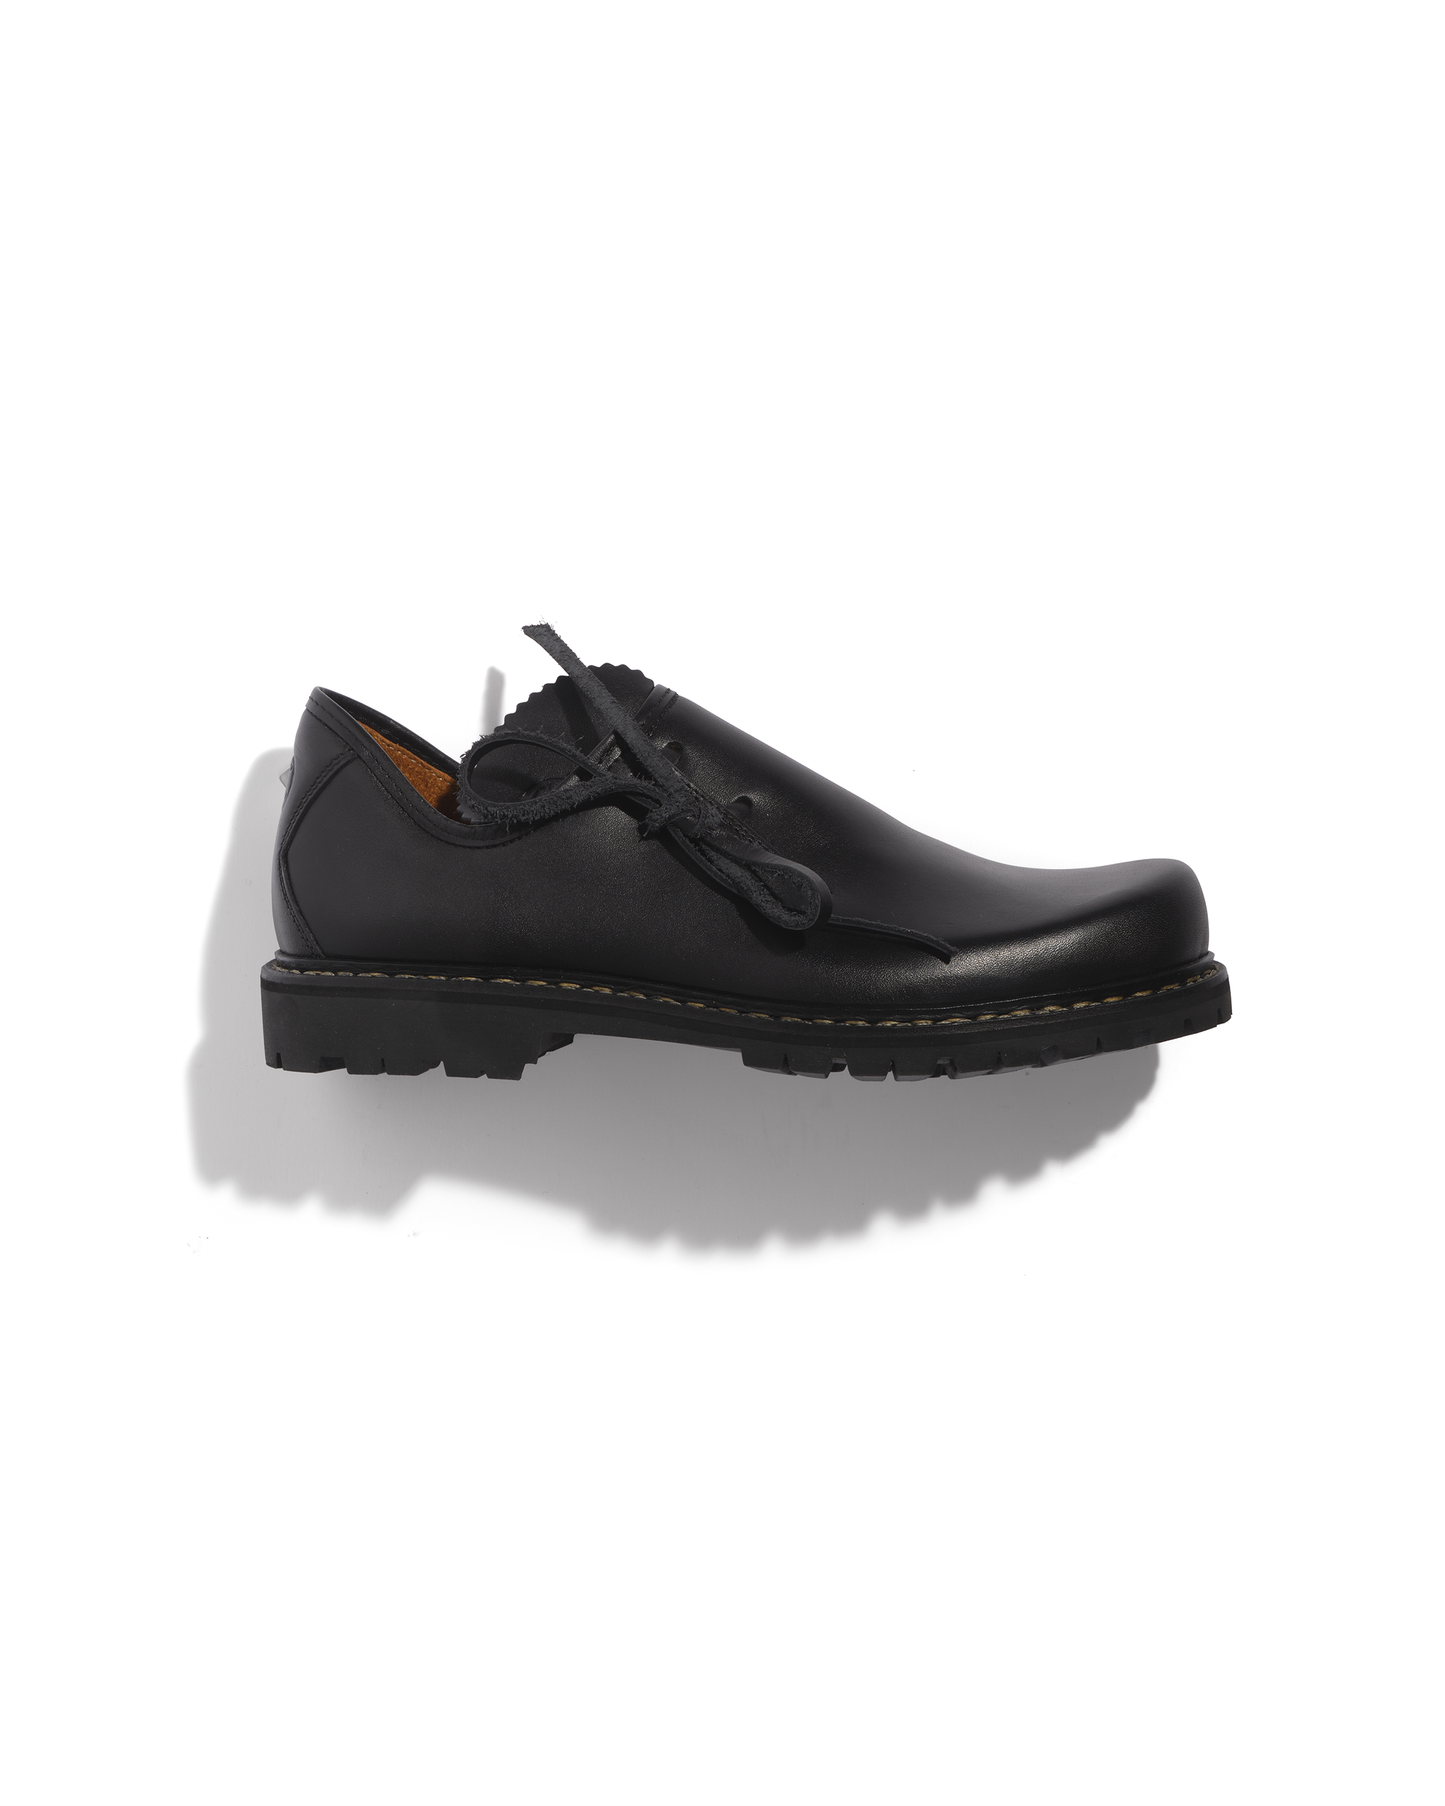 Men's black Haferl low shoes